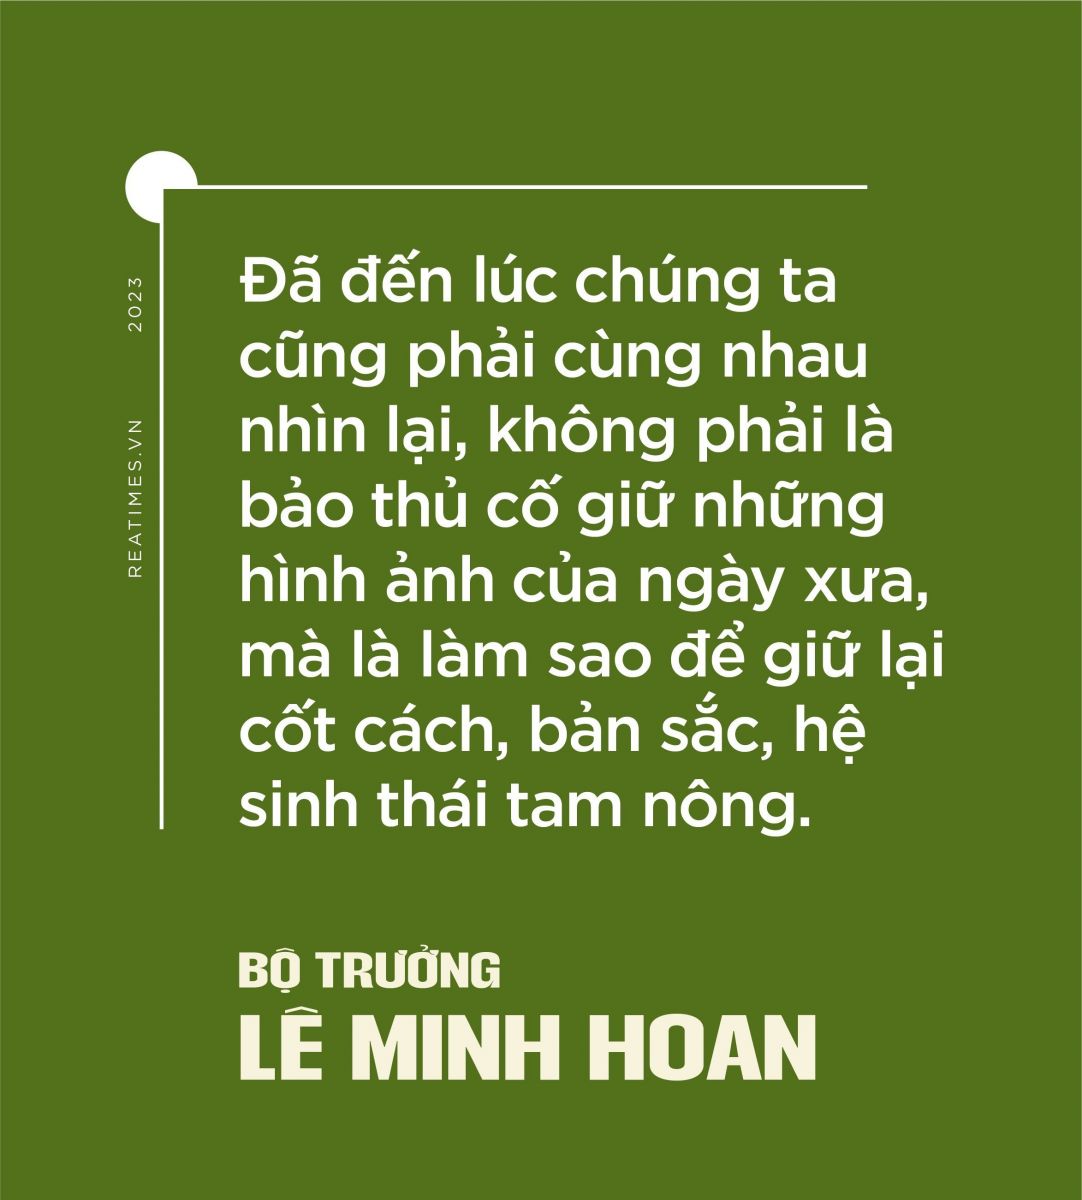 Bộ trưởng Lê Minh Hoan kiến trúc nông thôn